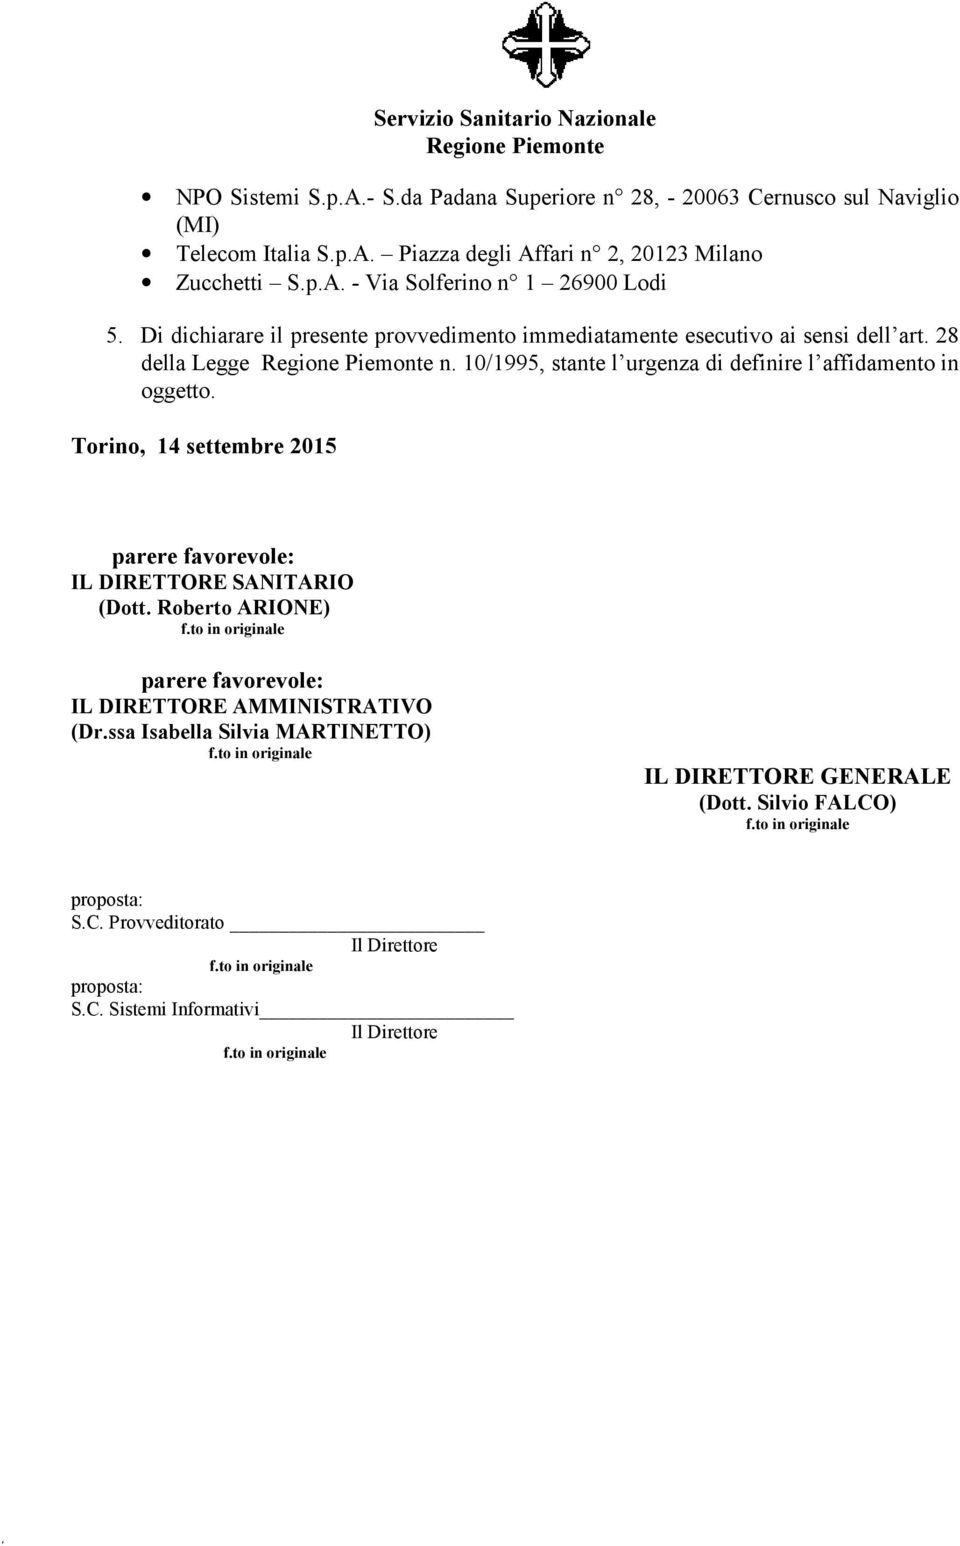 Torino, 14 settembre 2015 parere favorevole: IL DIRETTORE SANITARIO (Dott. Roberto ARIONE) parere favorevole: IL DIRETTORE AMMINISTRATIVO (Dr.